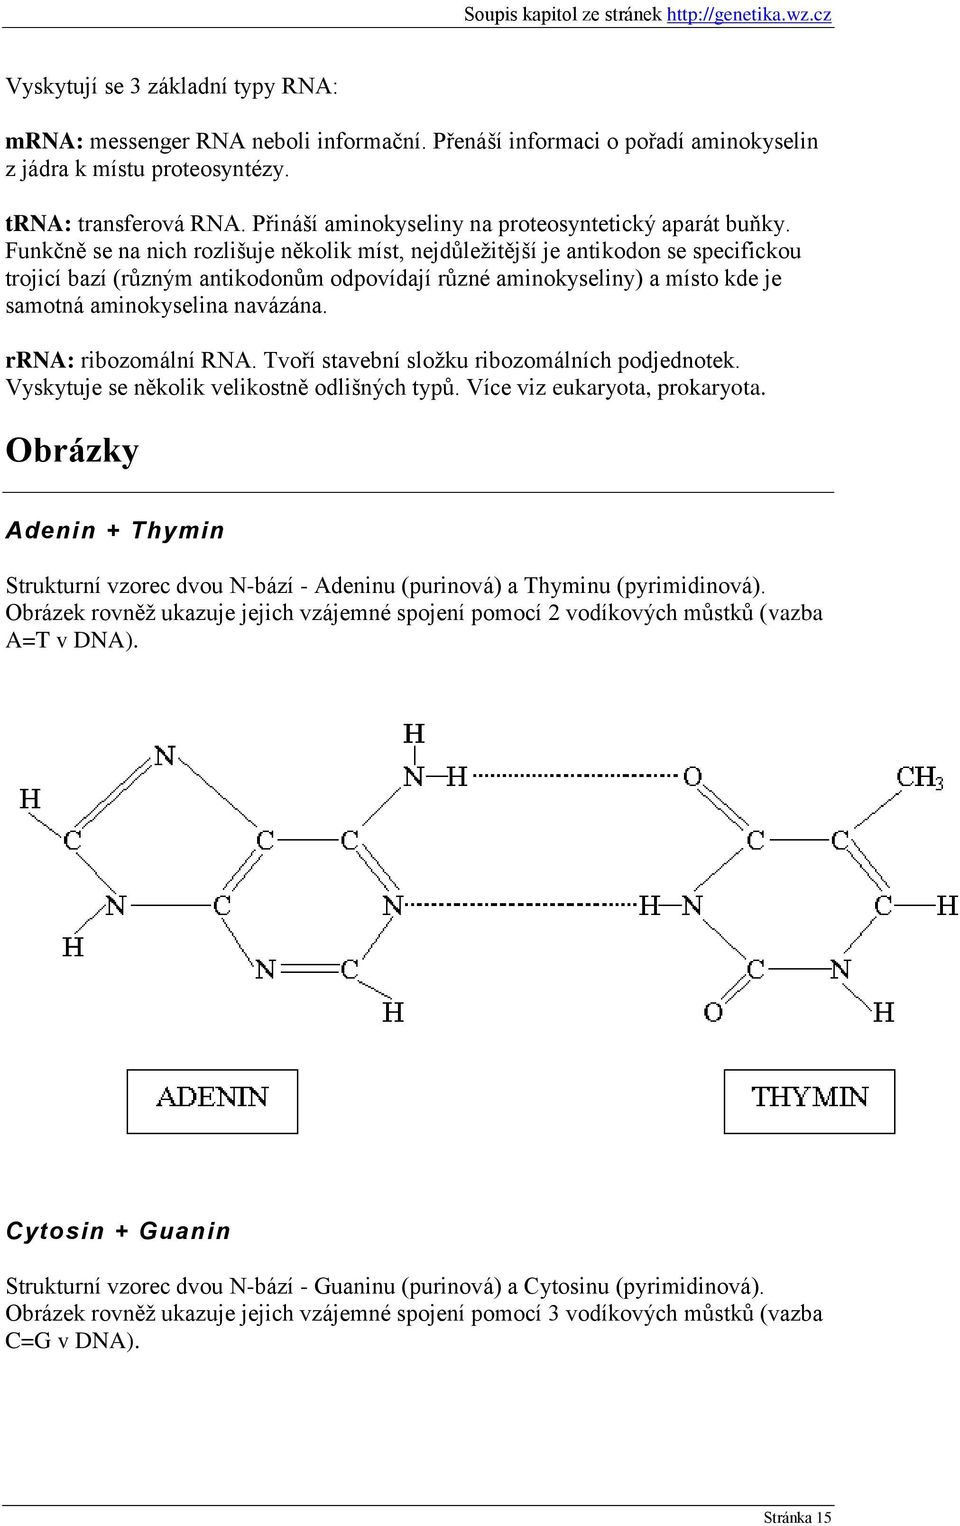 Funkčně se na nich rozlišuje několik míst, nejdůleţitější je antikodon se specifickou trojicí bazí (různým antikodonům odpovídají různé aminokyseliny) a místo kde je samotná aminokyselina navázána.